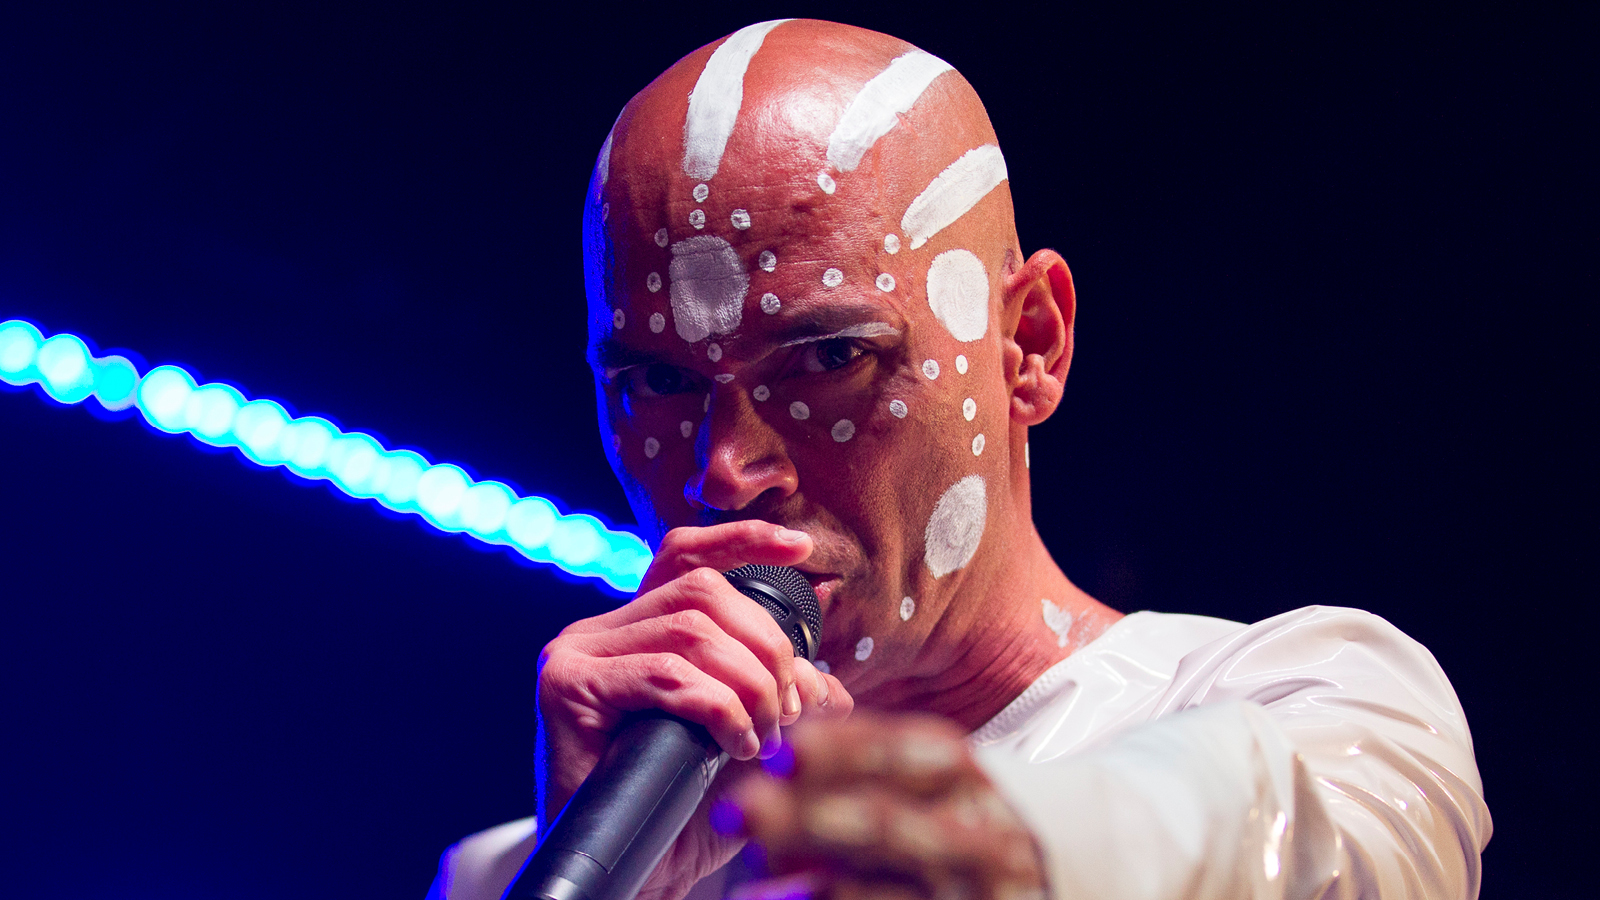 A bald man with aboriginal face makeup singing into the mic.